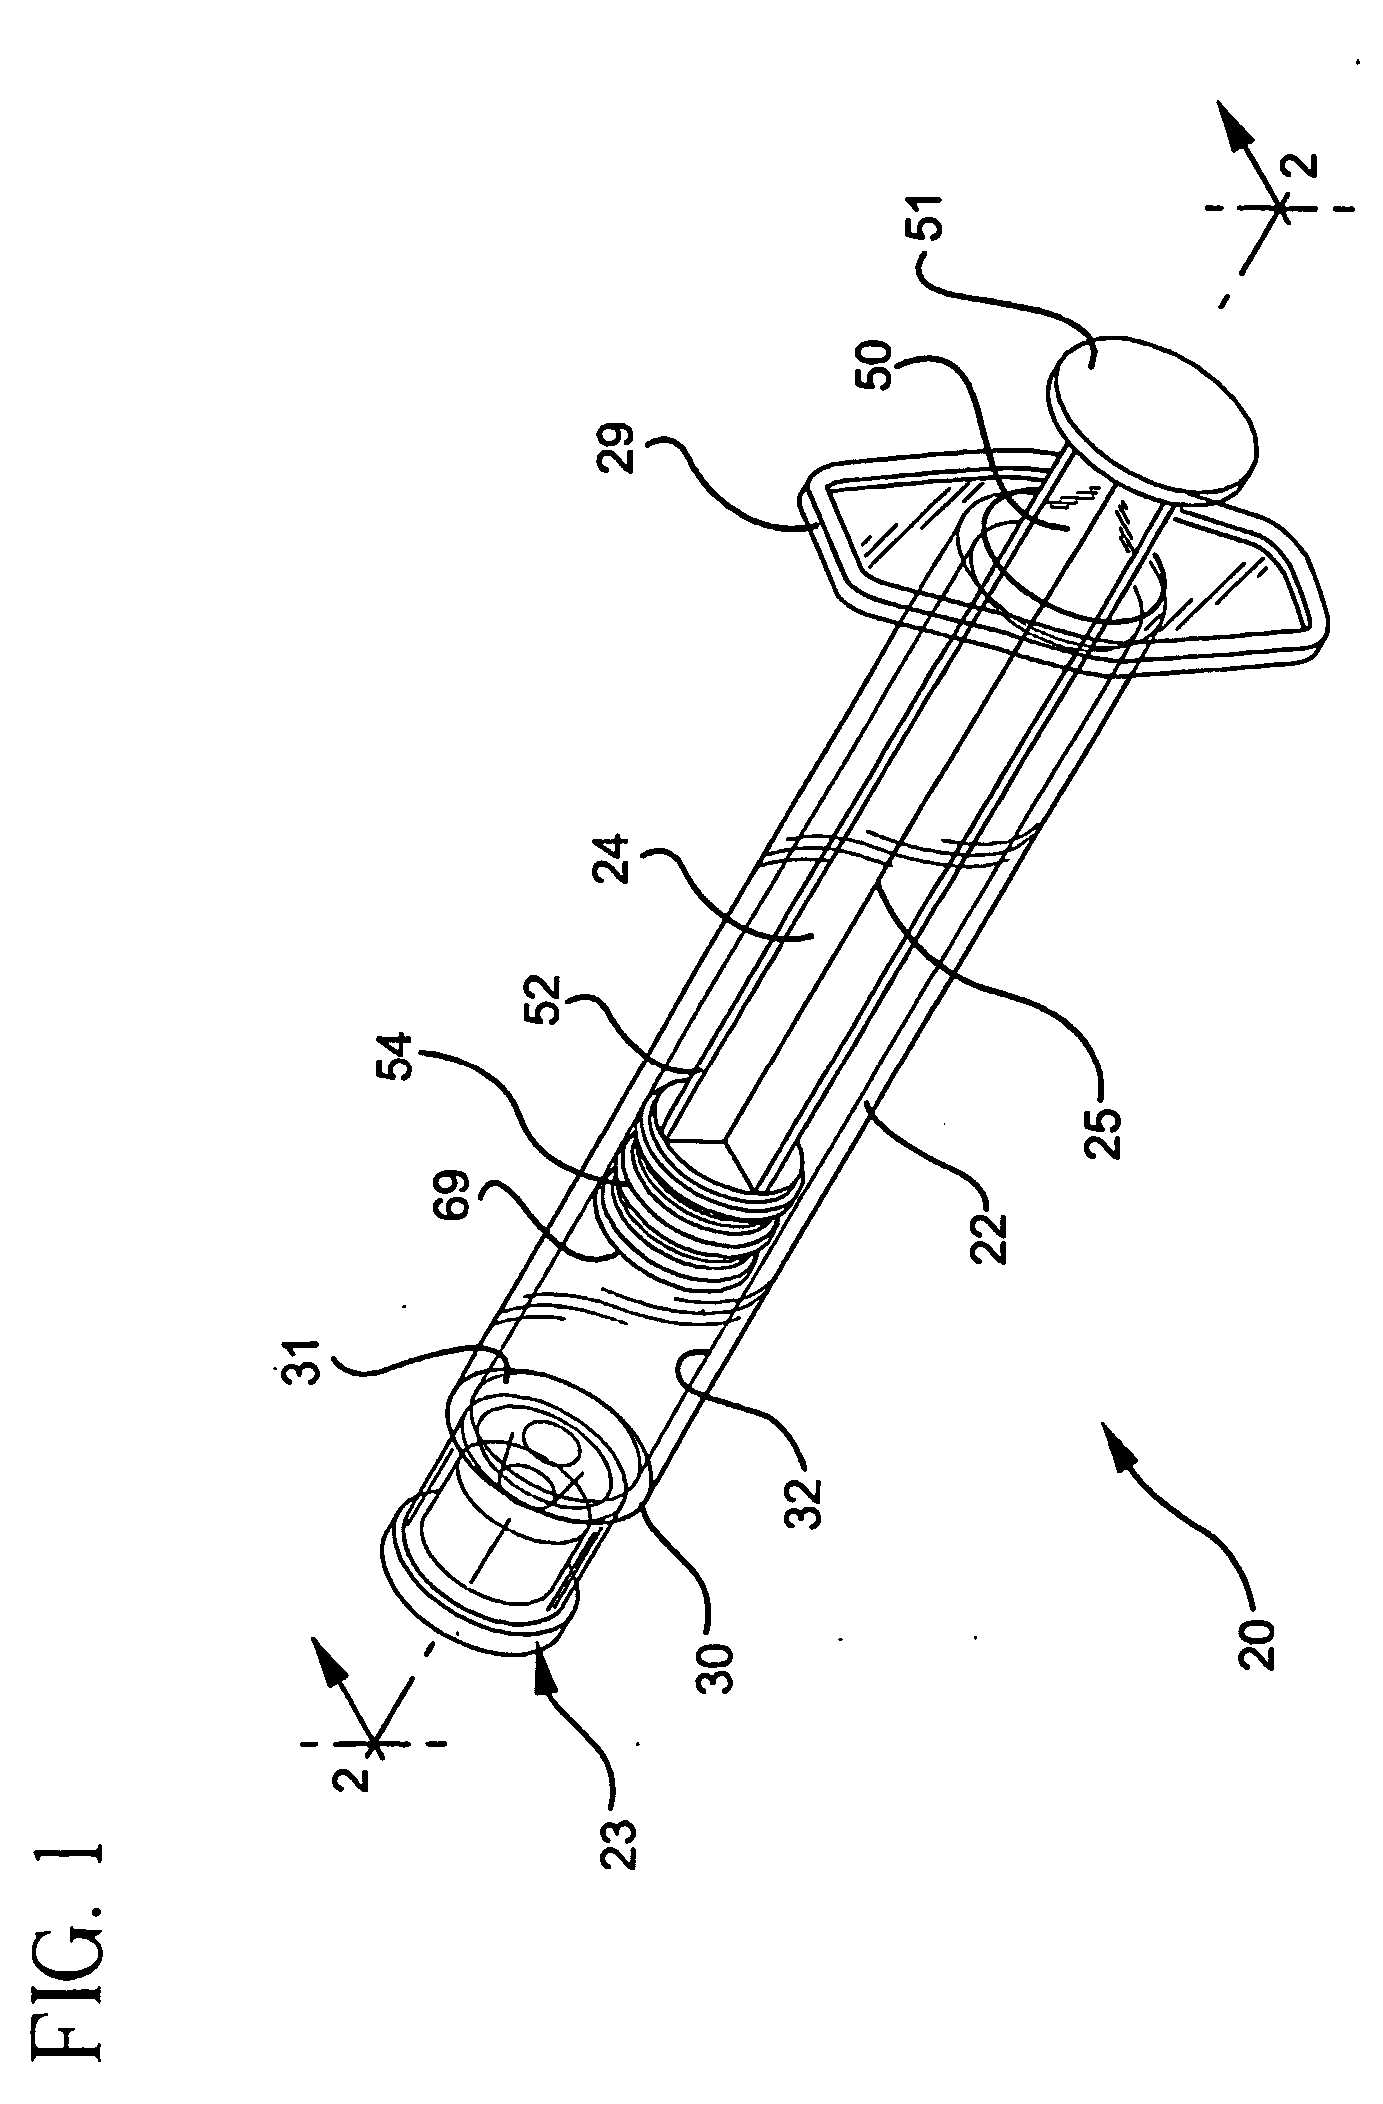 Flush syringe having compressible plunger